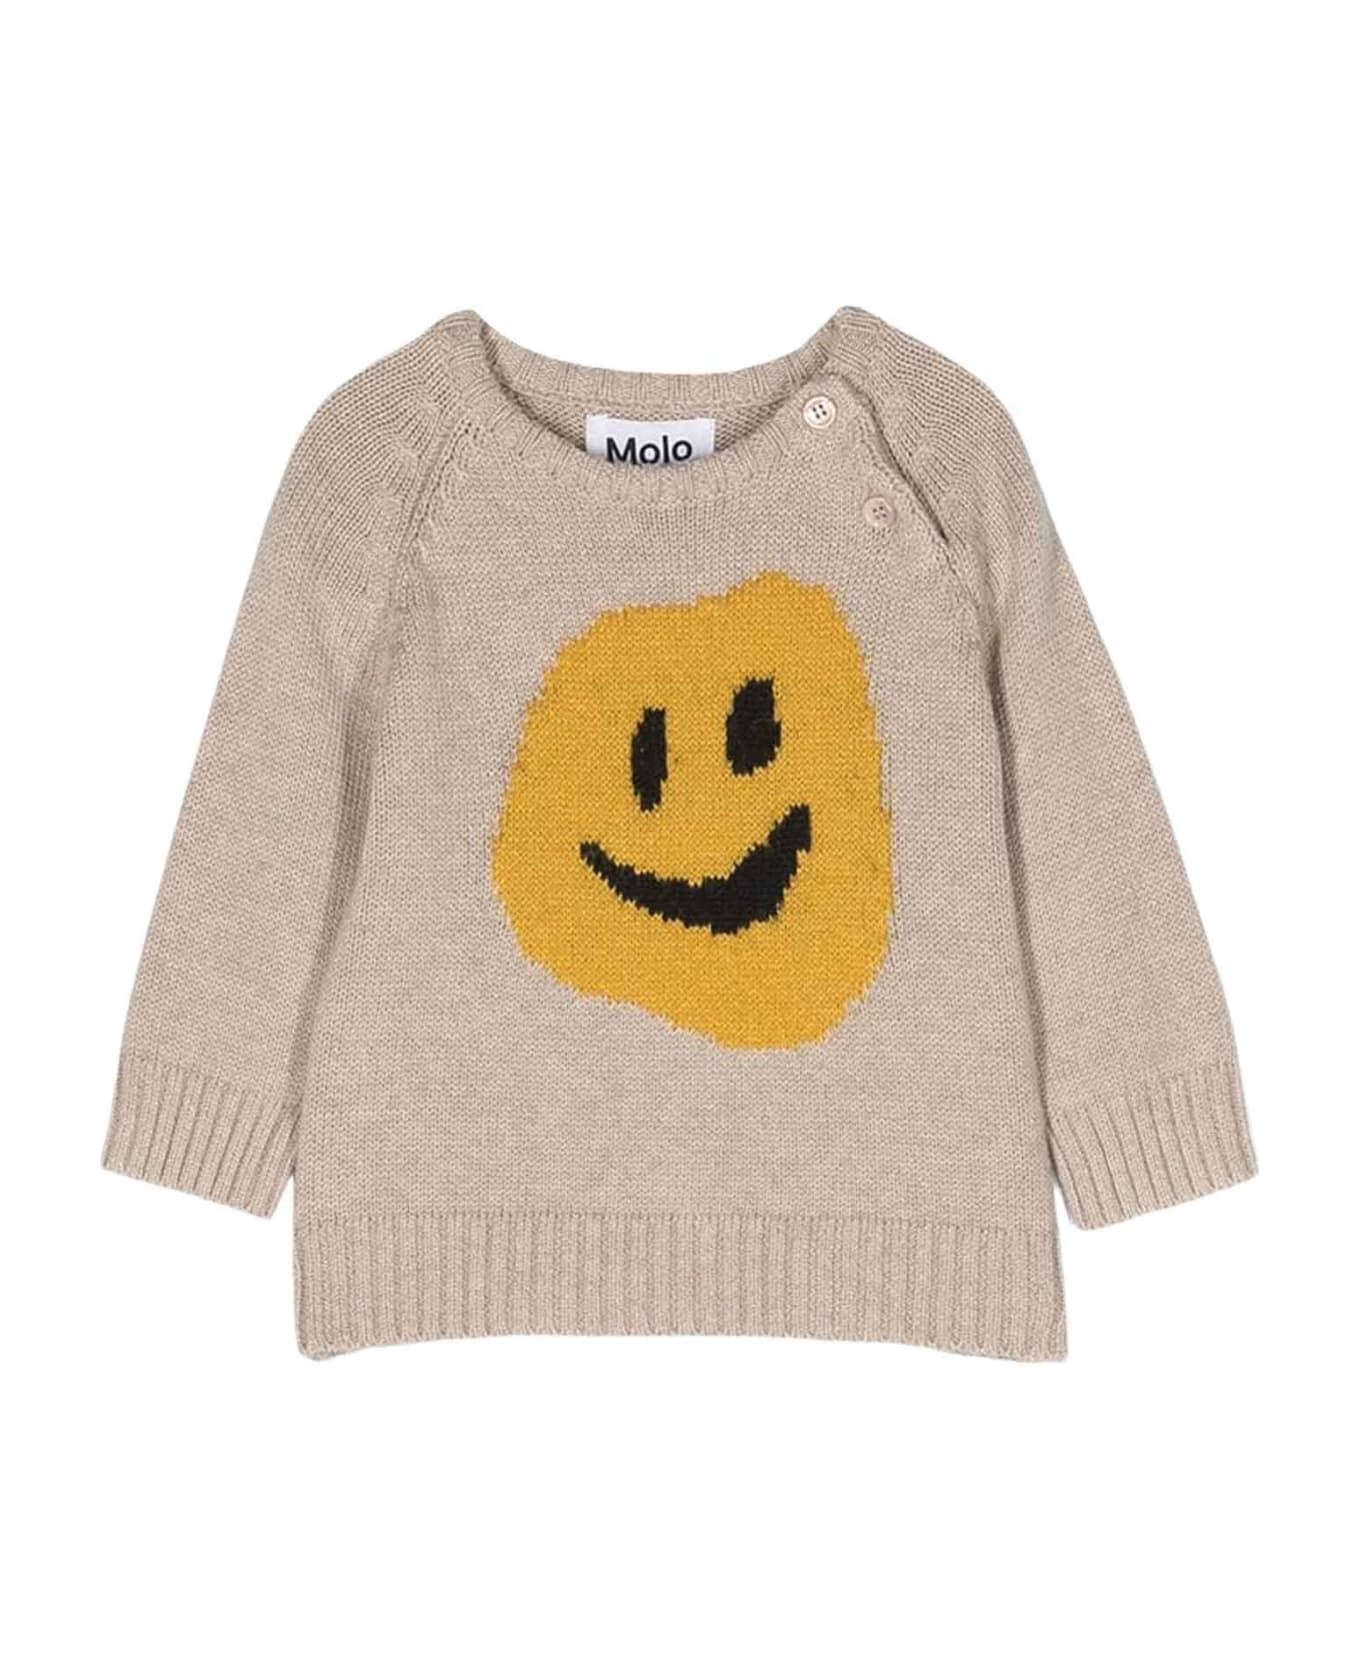 Molo Beige Sweater Unisex Kids - Beige シャツ